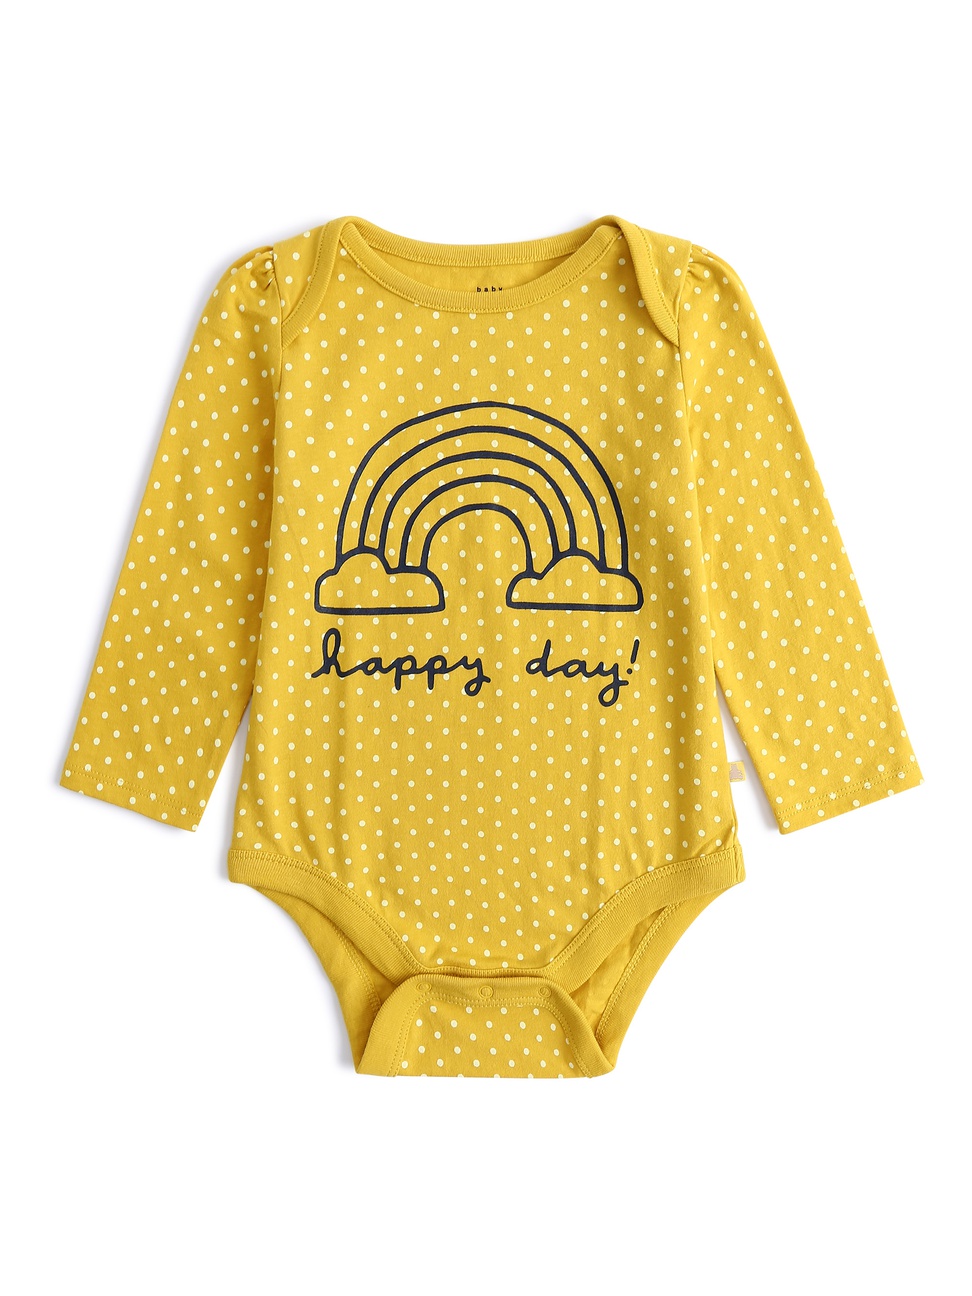 嬰兒裝|童趣亮色圓點印花長袖包屁衣-黃色